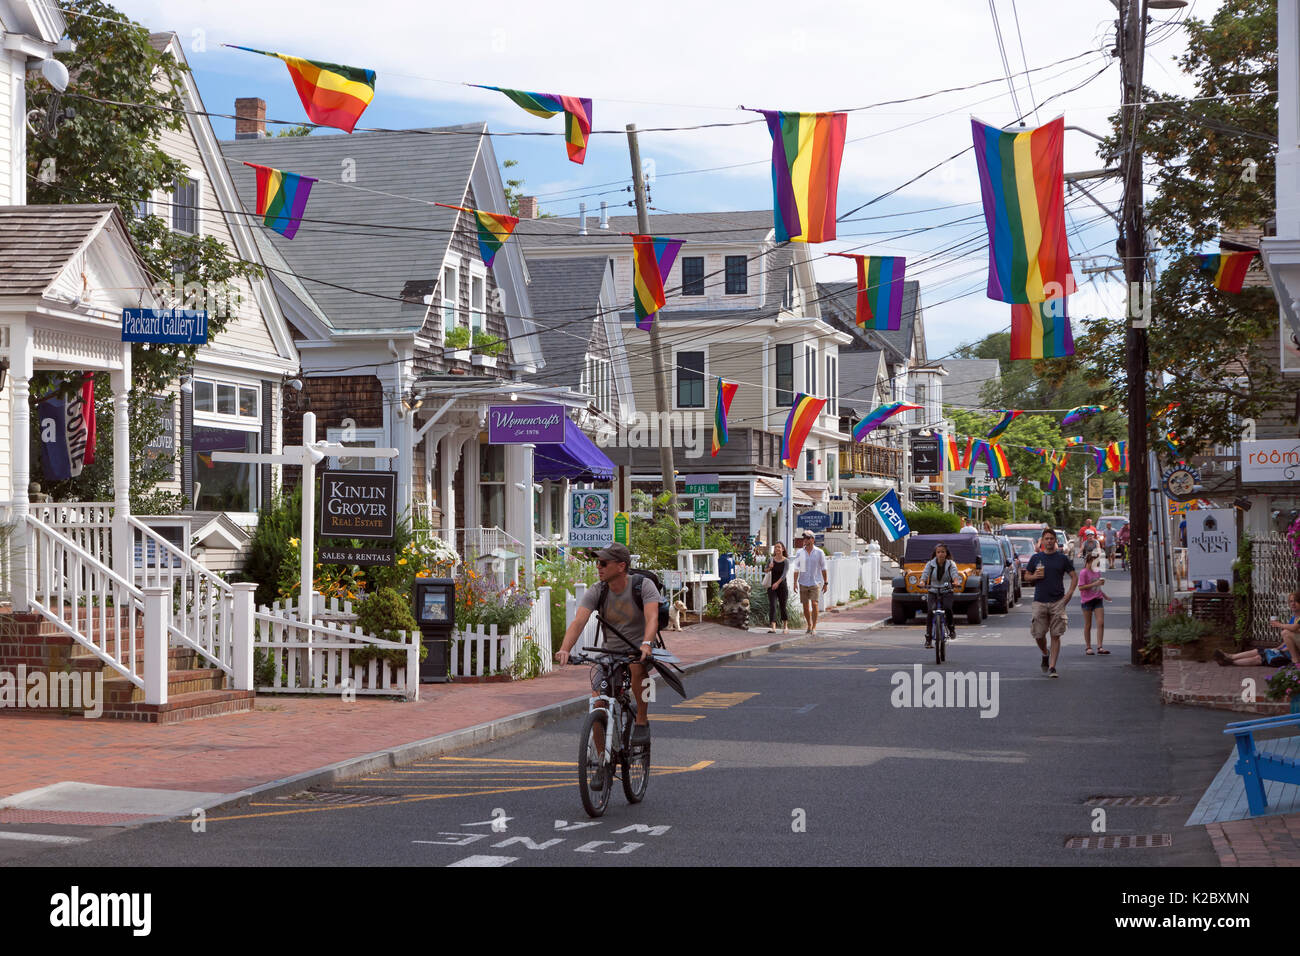 Las personas caminar y andar en bicicleta en la concurrida calle comercial en Provincetown, Massachusetts, en Cape Cod, EE.UU. Foto de stock